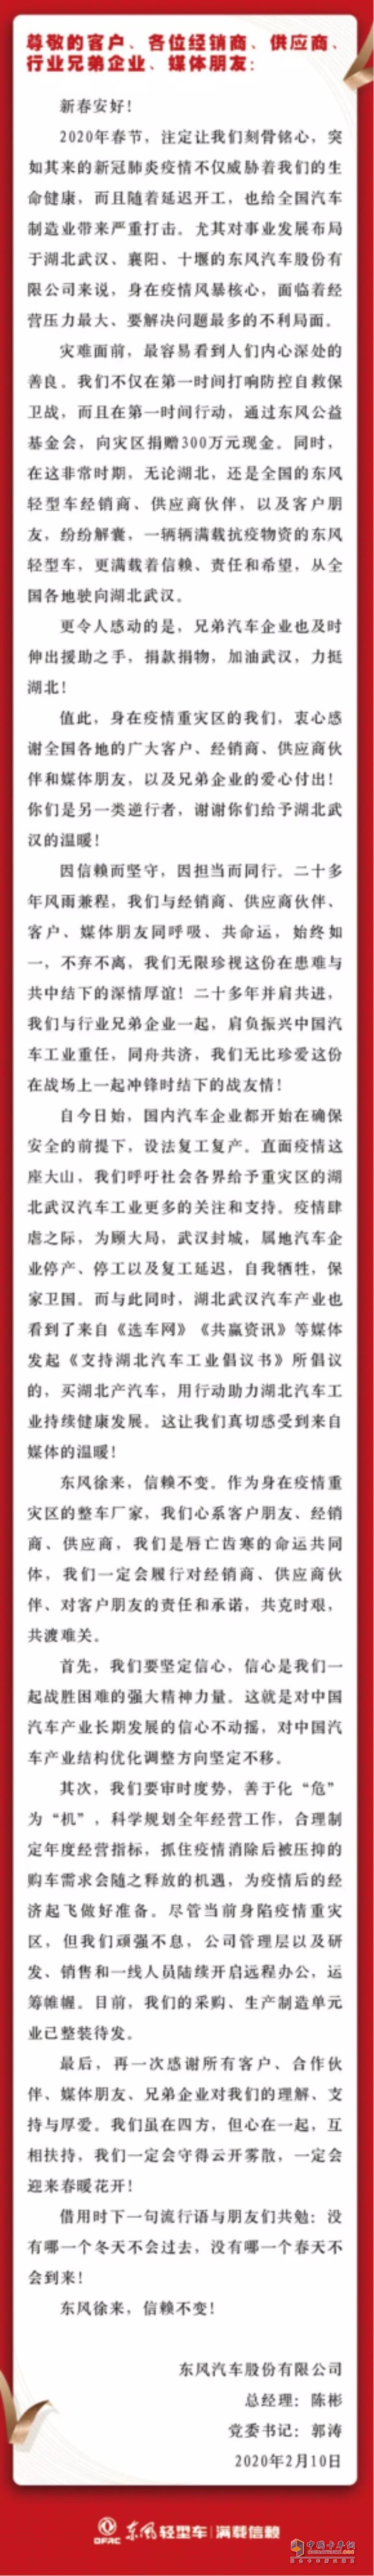 东风公司旗下东风汽车股份有限公司发布了一封公开信